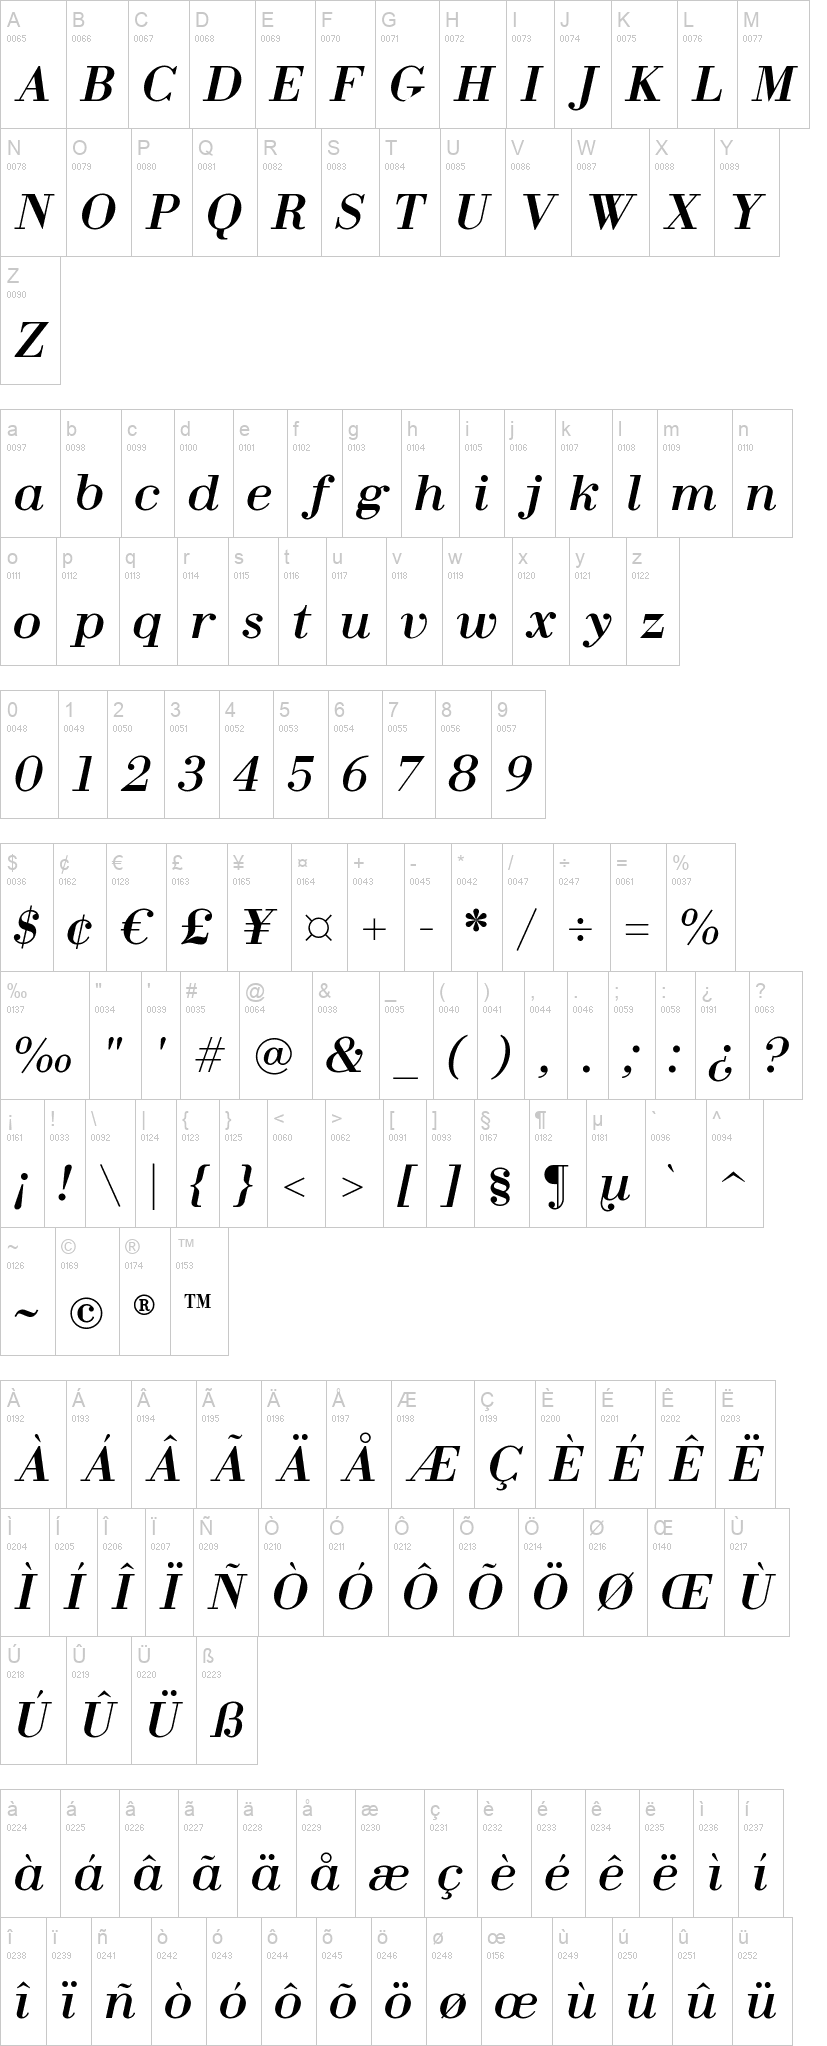 Fin Serif Display